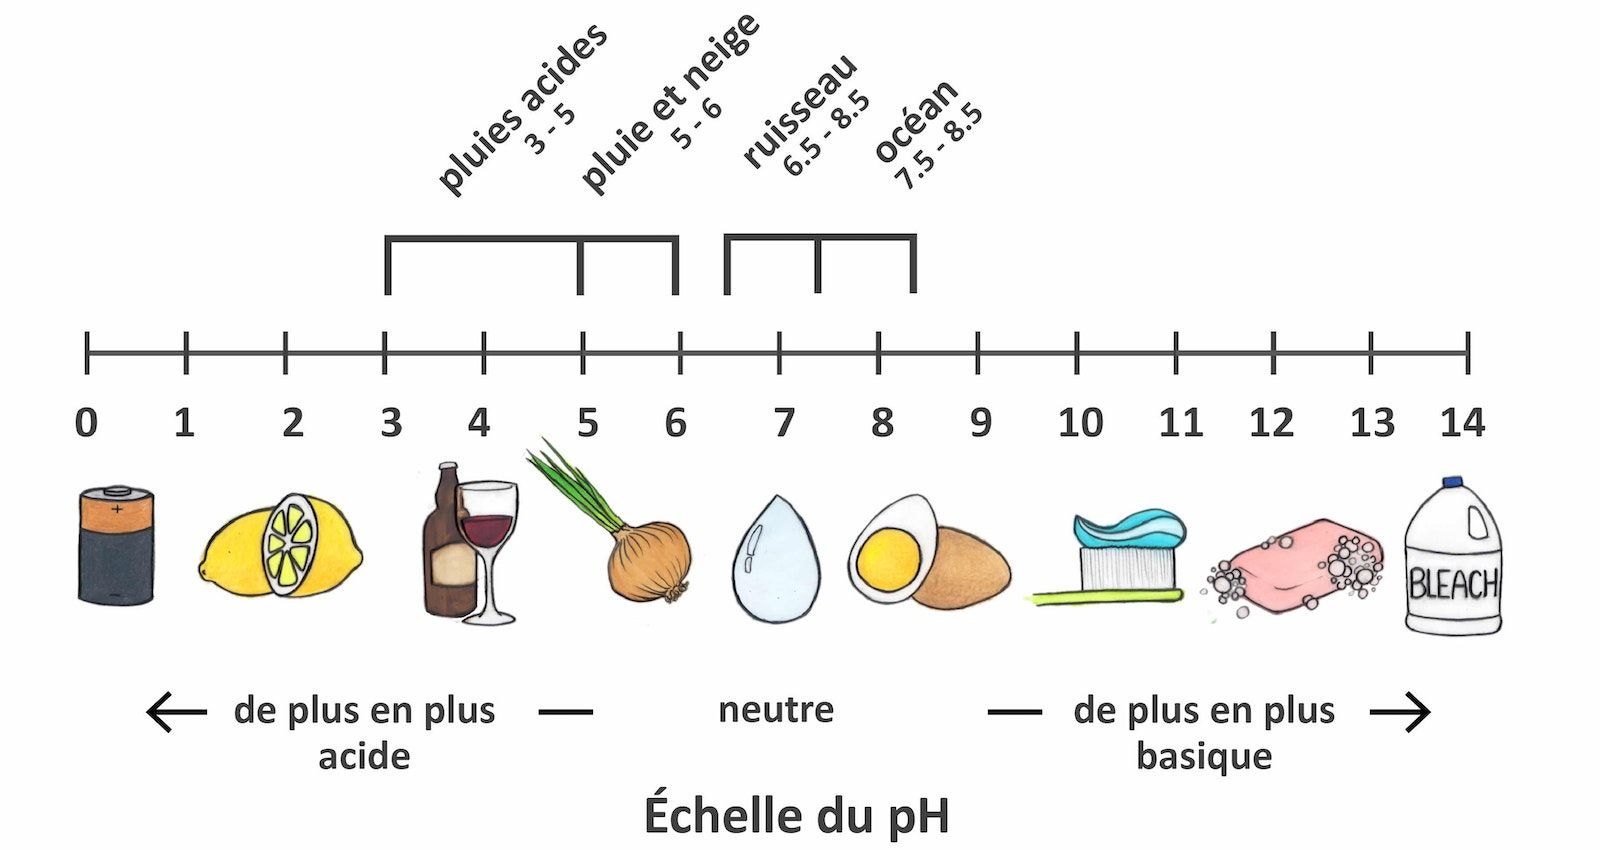 Dessin d'une échelle de pH montrant les valeurs de pH entre 0 et 14. Les valeurs neutres sont indiquées près de pH 7, les valeurs de pH de plus en plus acides sont indiquées vers pH 0, et les valeurs de pH de plus en plus alcalines sont indiquées entre pH 7 et 14. Divers éléments (par exemple de l'eau, du savon) sont représentés le long de l'échelle à leurs valeurs de pH respectives.